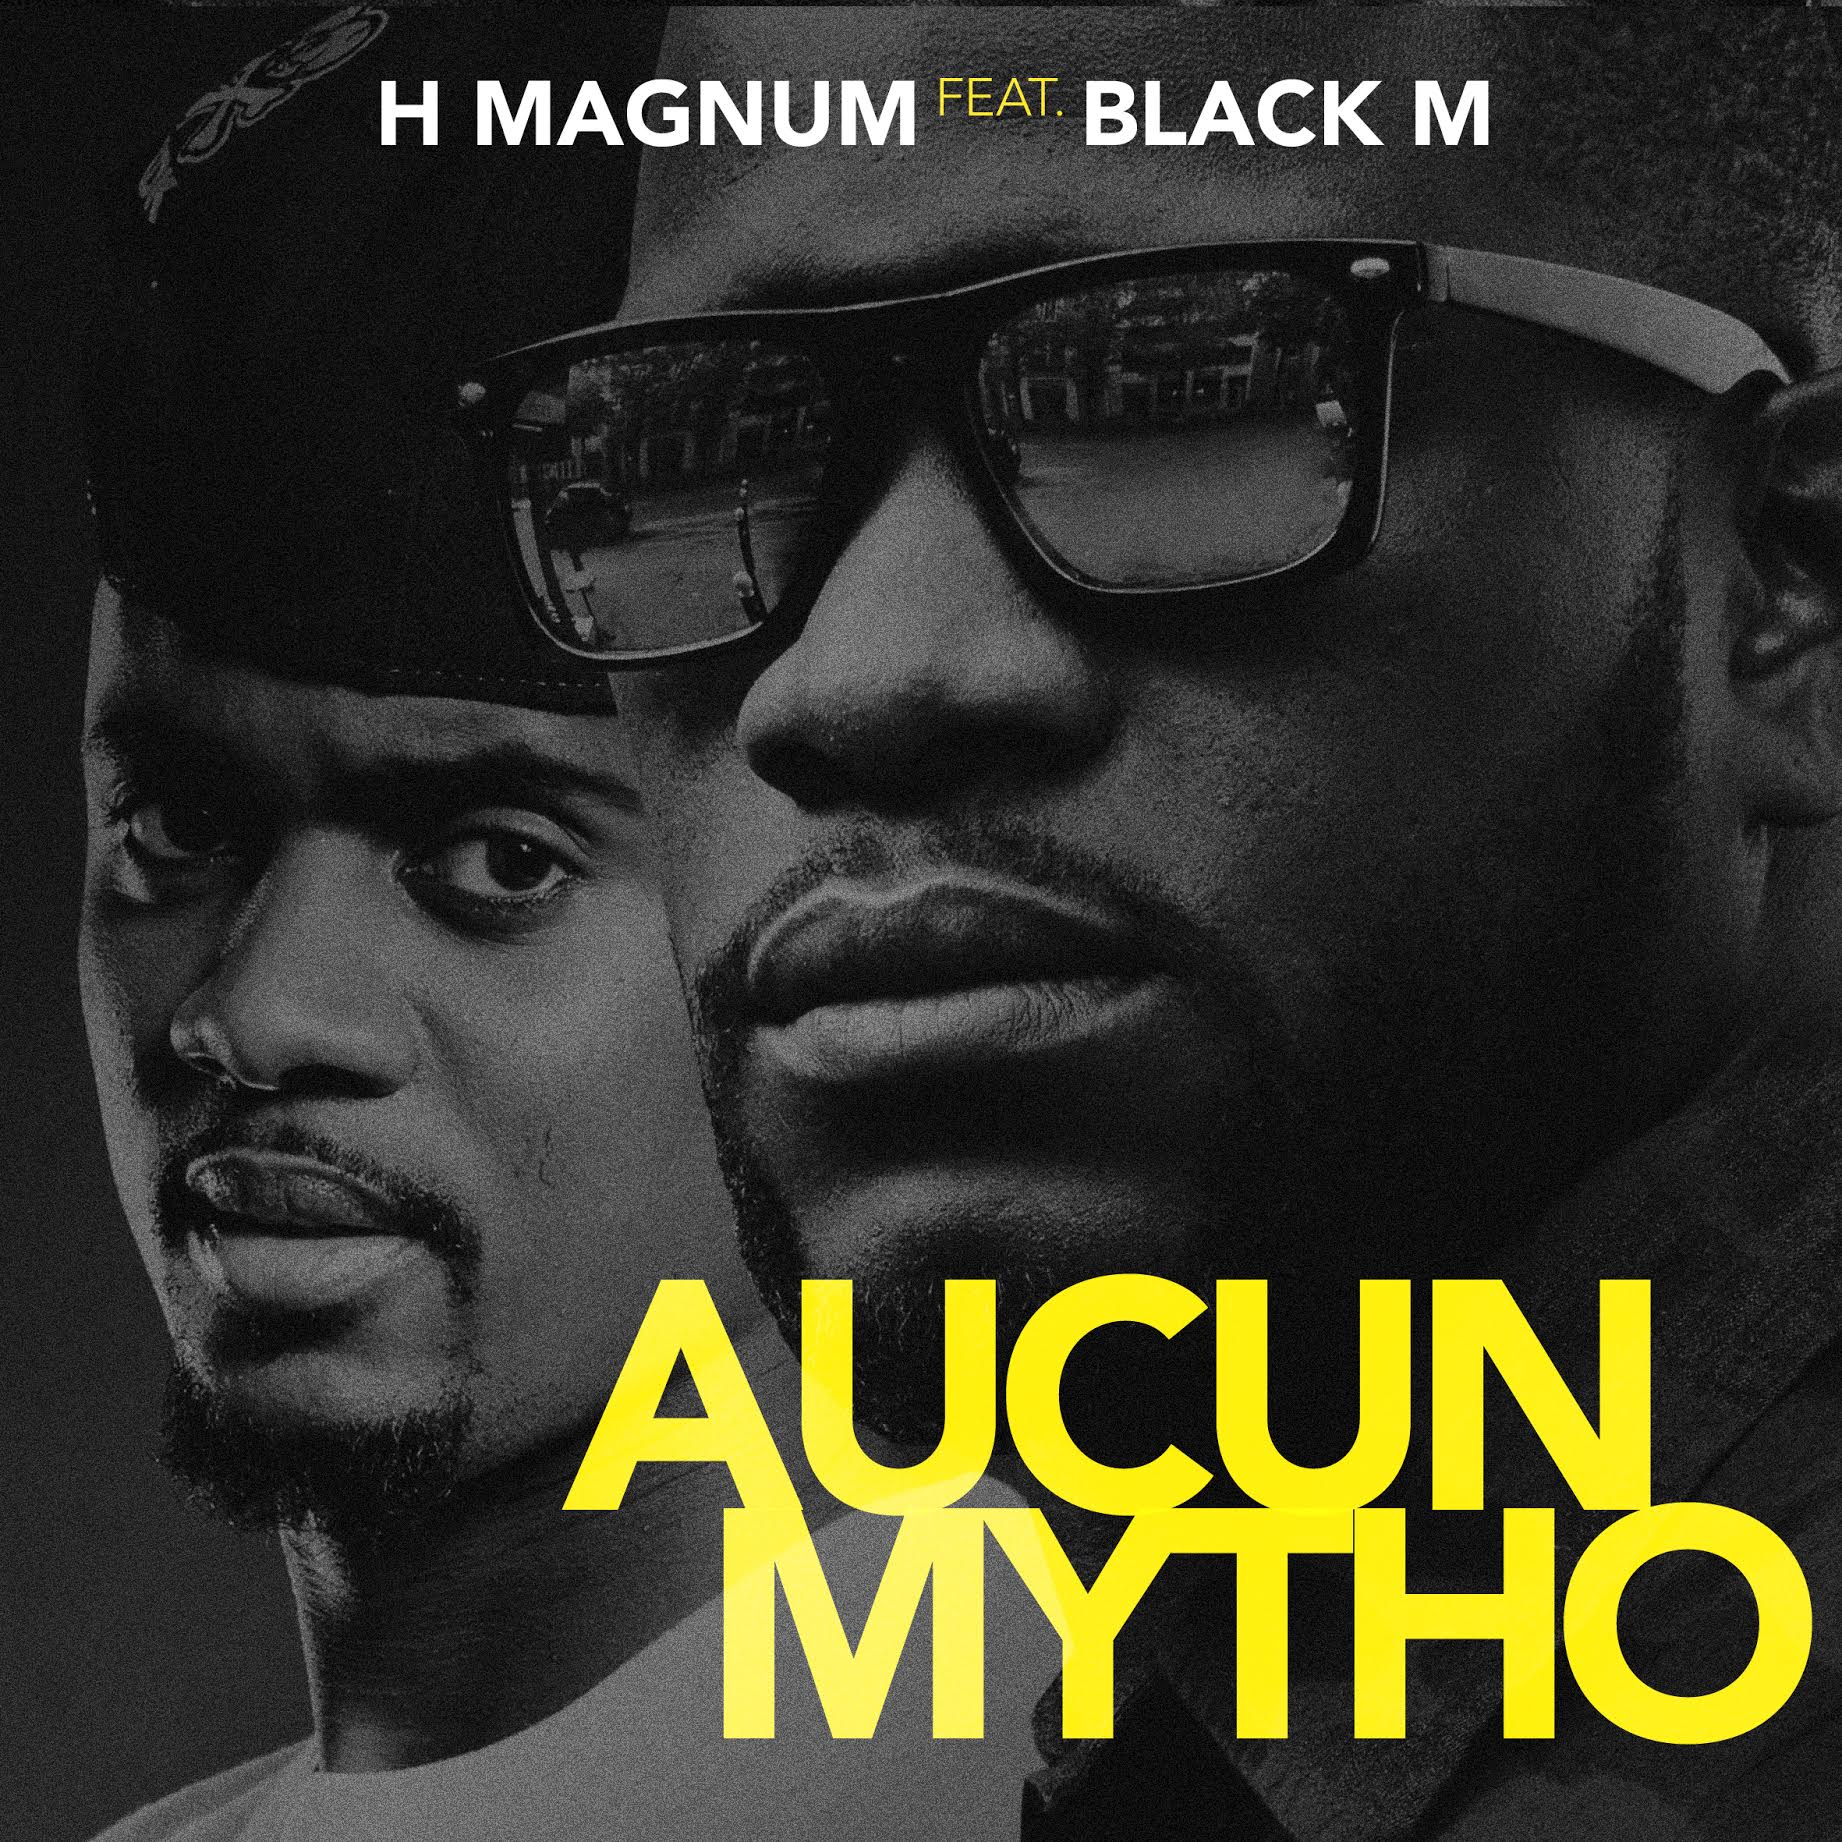 H Magnum : "Aucun Mytho" feat. Black M